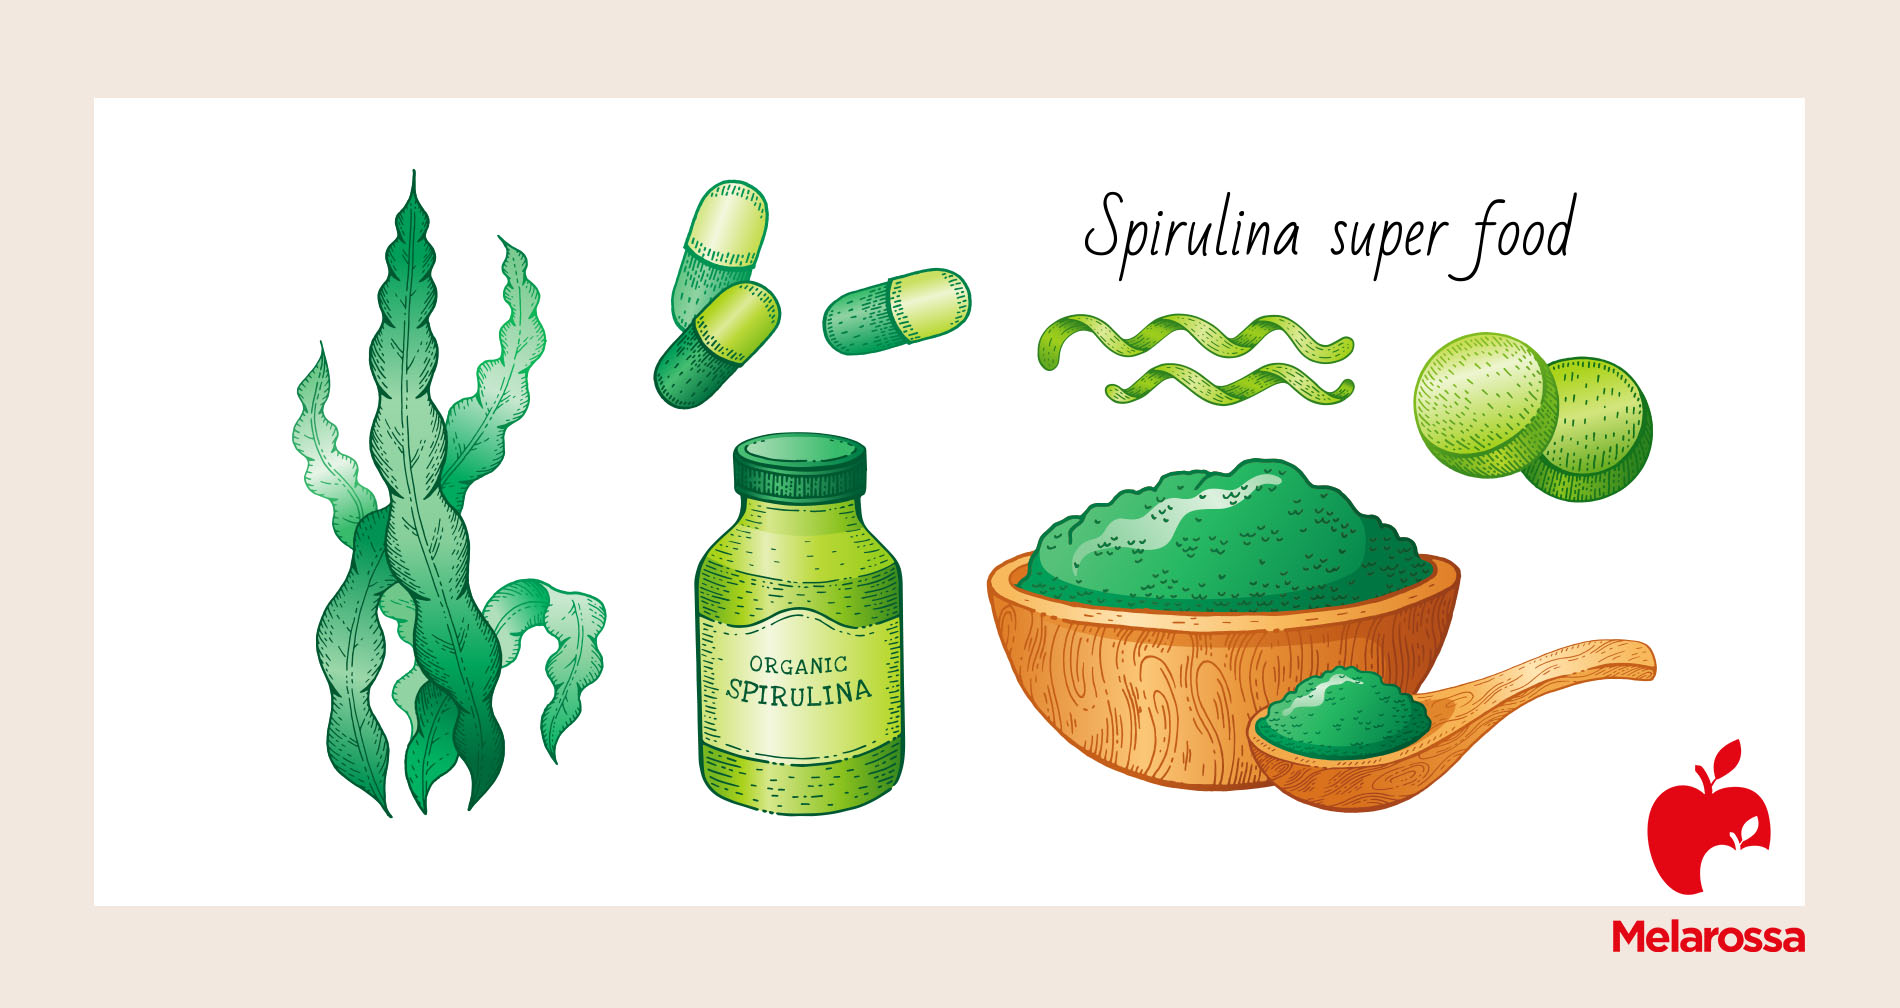 alga spirulina è un super food